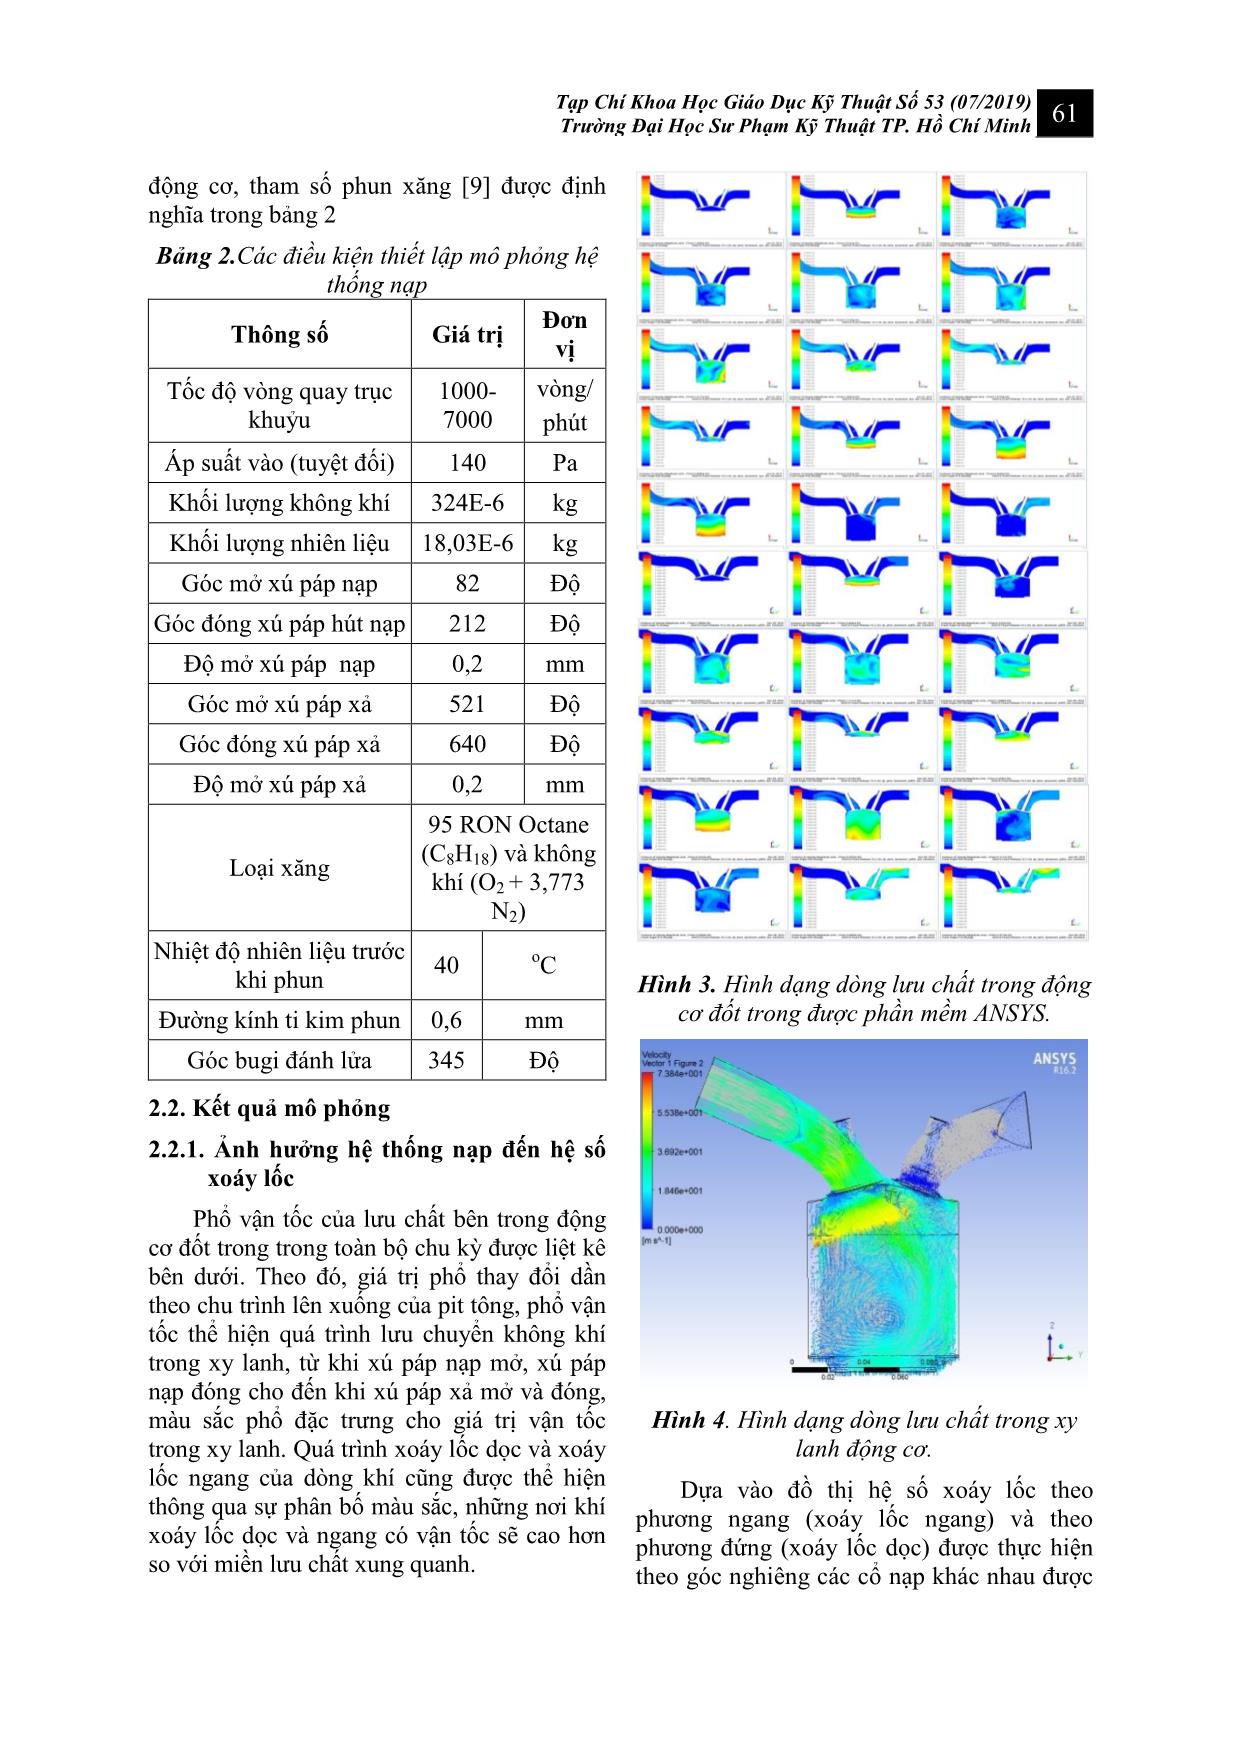 Nghiên cứu ảnh hưởng của sự xoáy lốc trên hệ thống nạp đến đặc tính động cơ xe máy trang 4